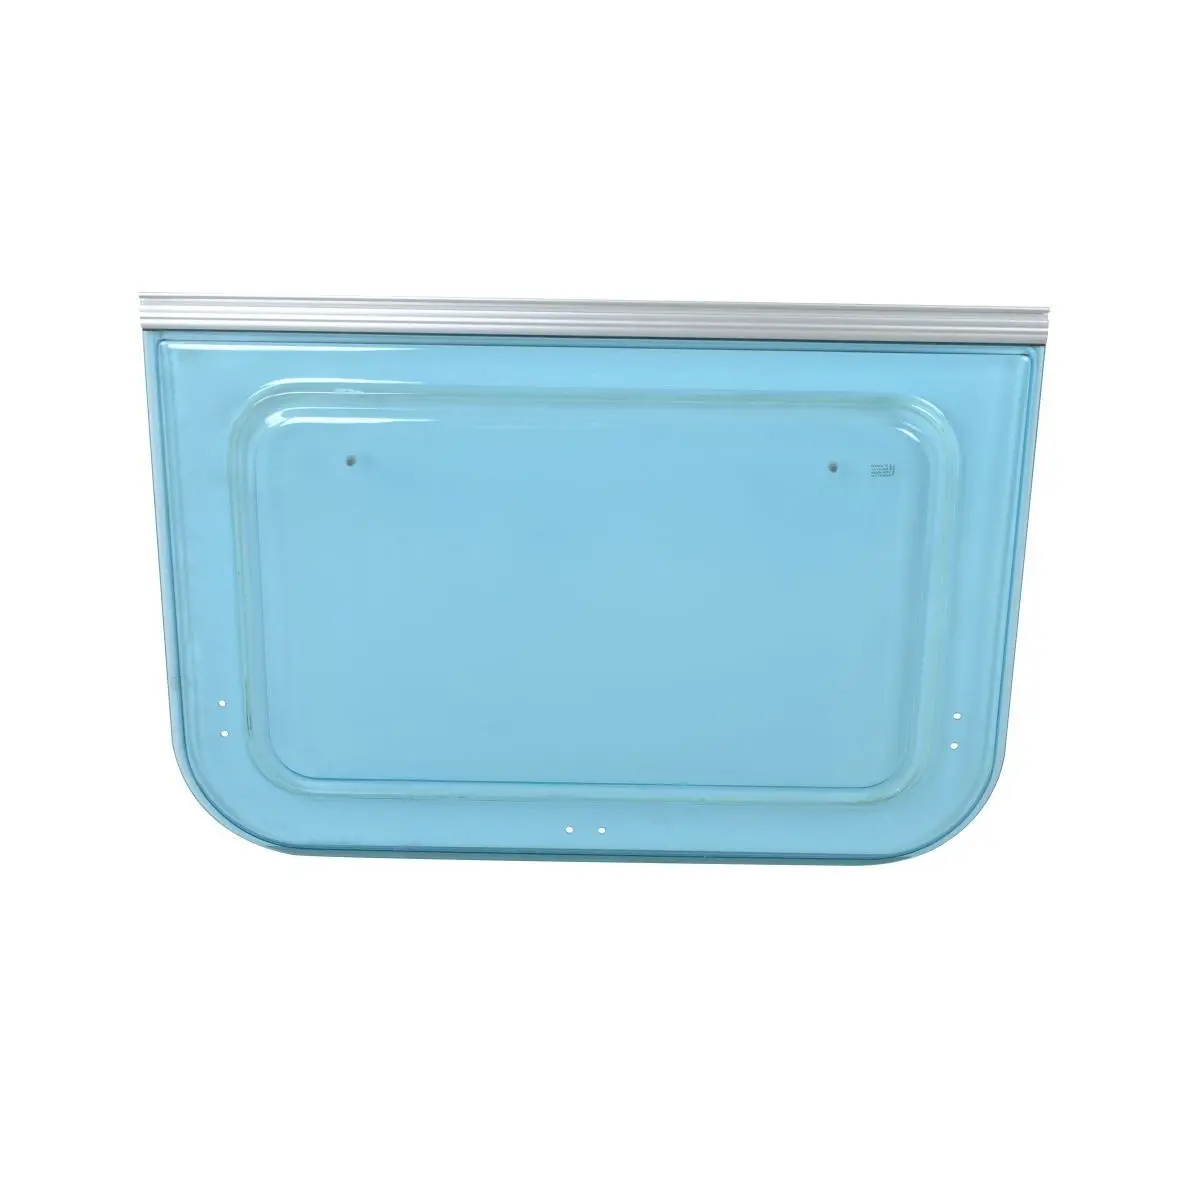 Csuklós ablak 600 x 380 mm - kék